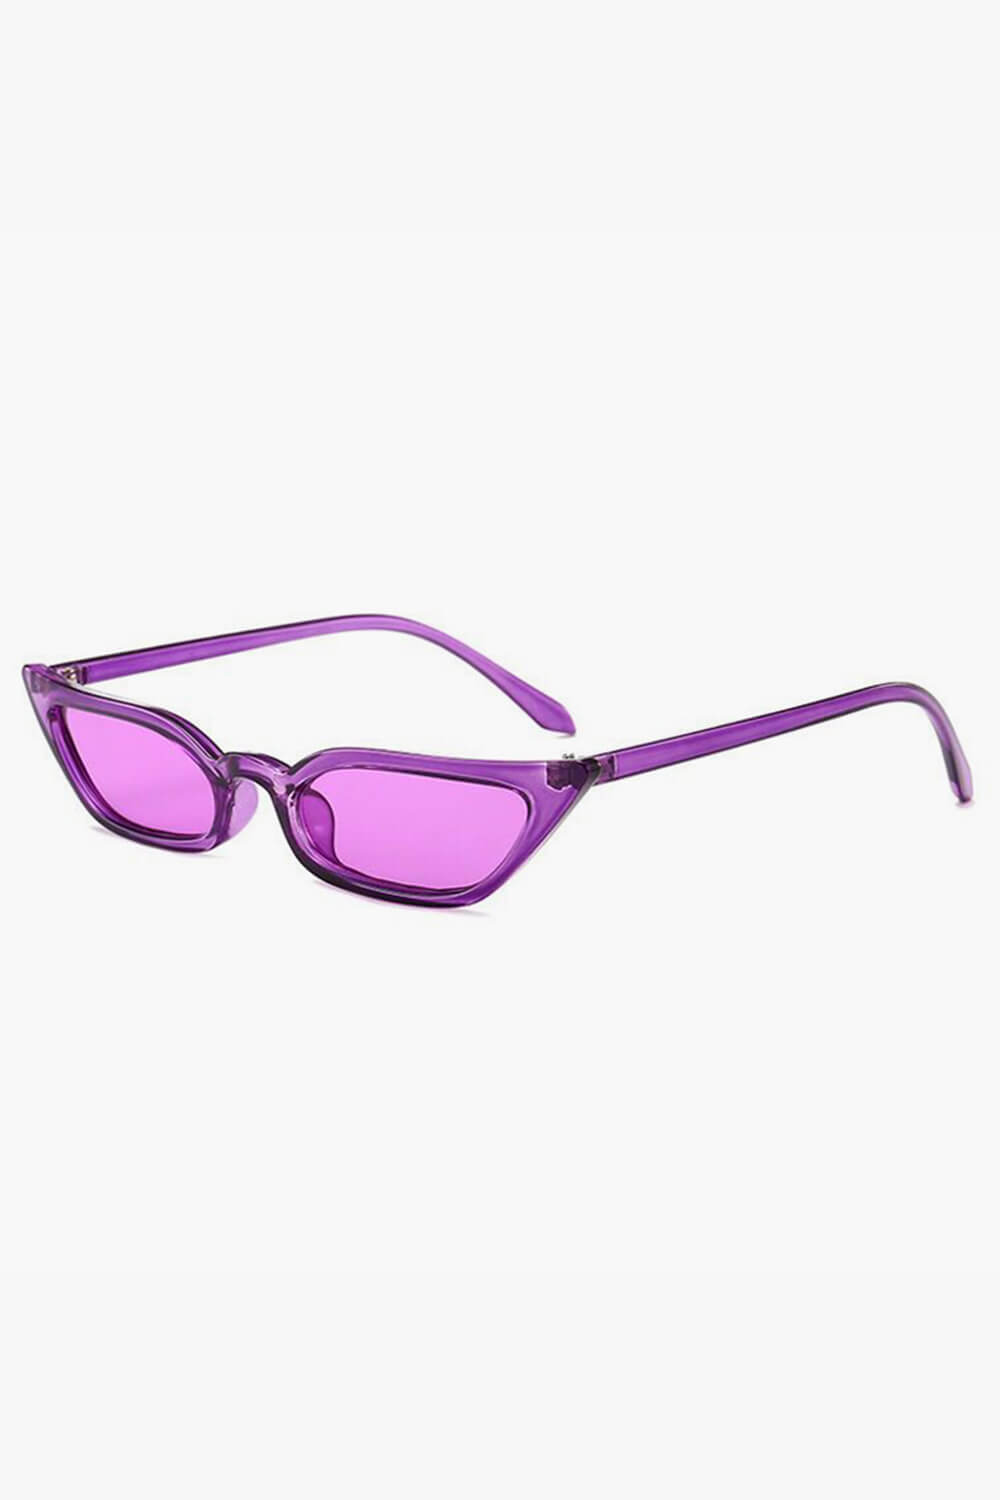 Thin Frame Cat Eye Aesthetic Glasses